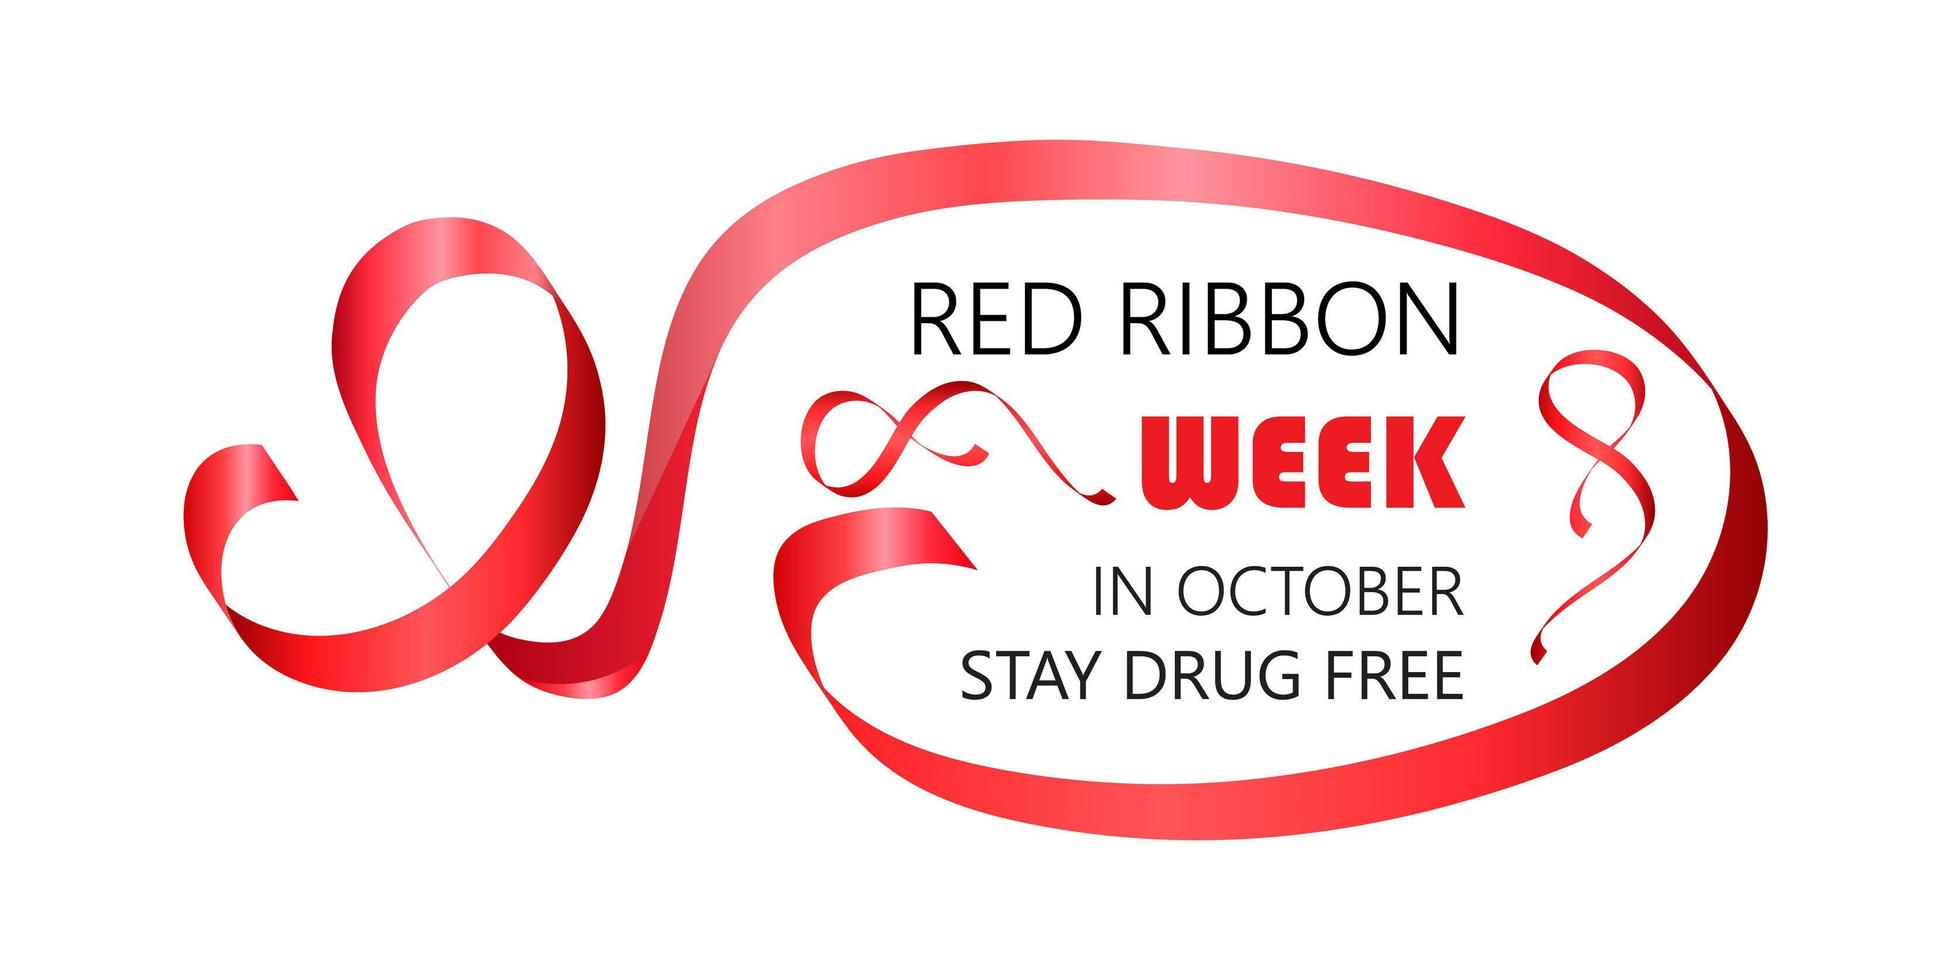 la semaine nationale du ruban rouge est organisée chaque année fin octobre. rester texte sans drogue. vecteur